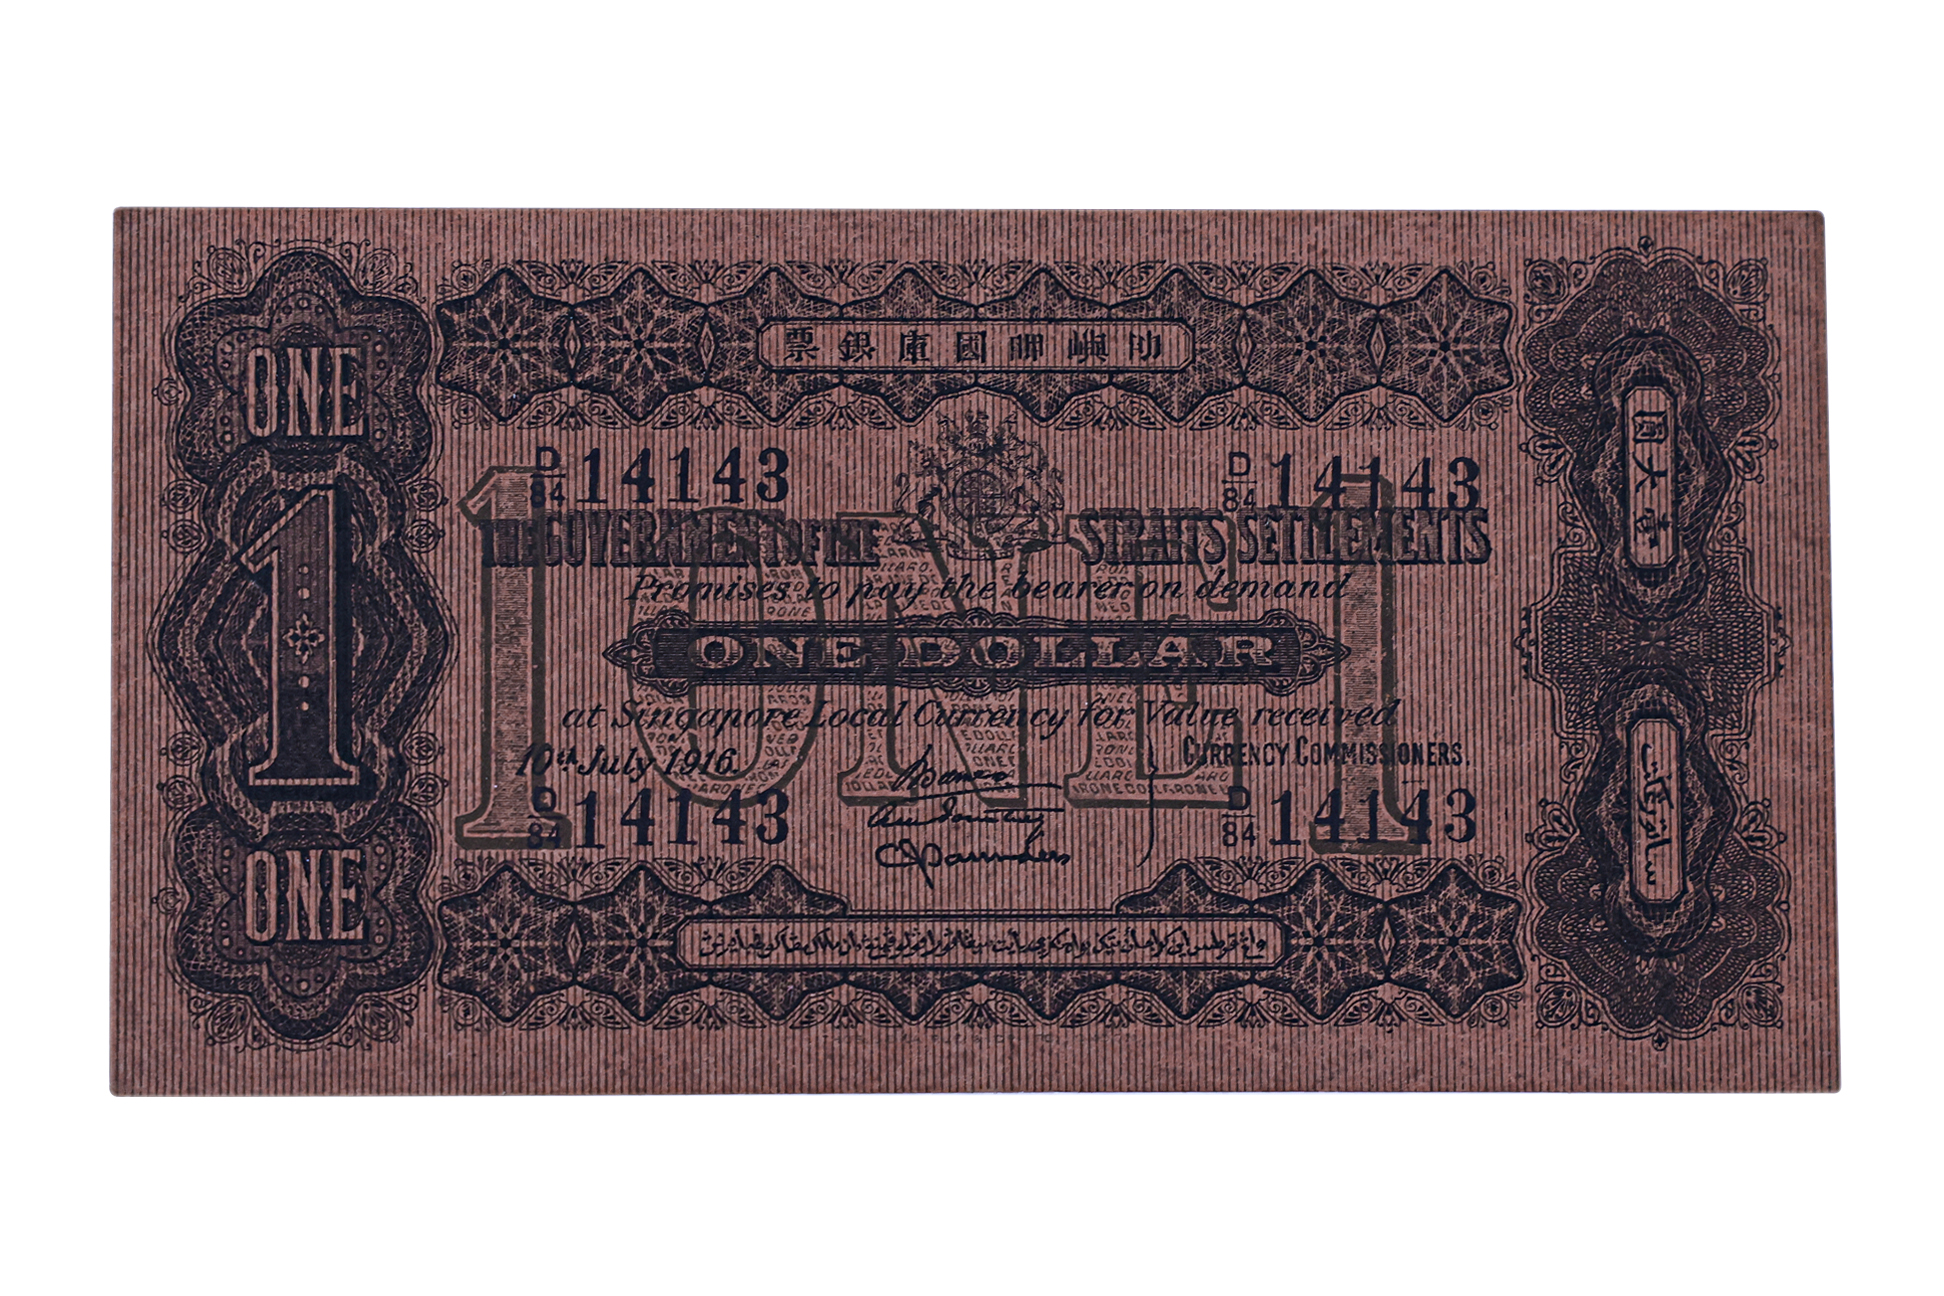 STRAITS SETTLEMENTS 1 DOLLAR 1916